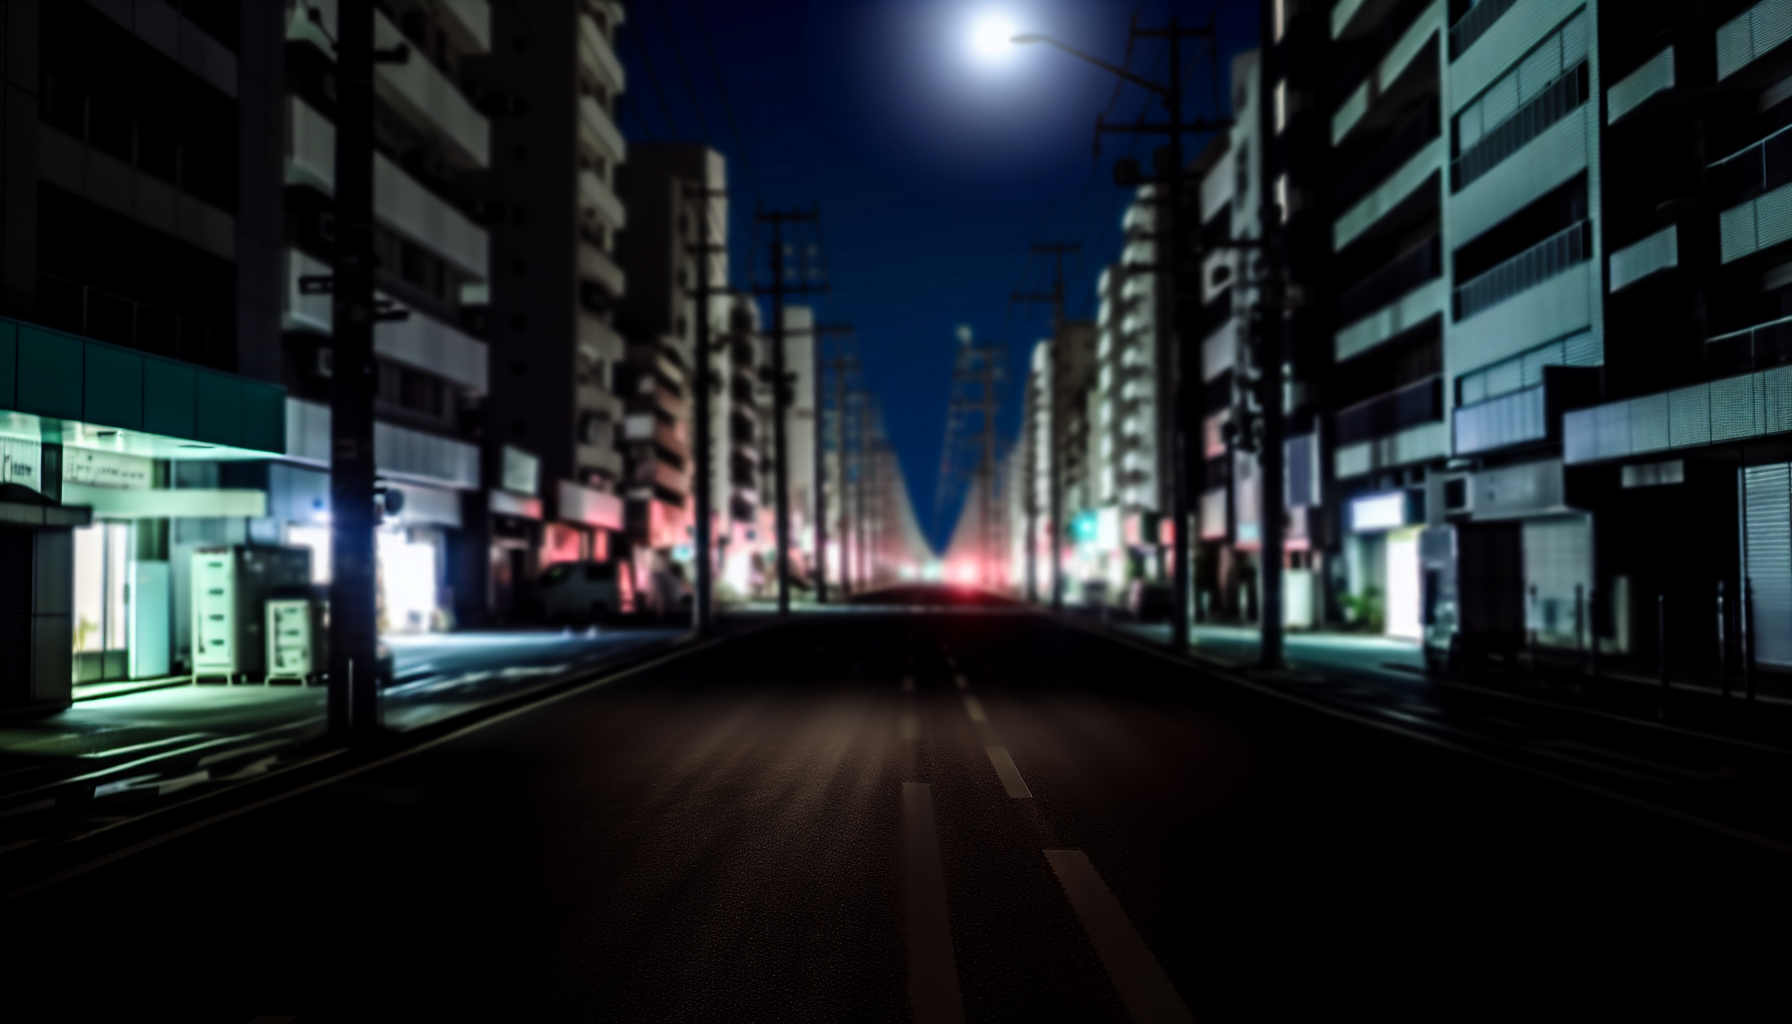 Unlit street light at night